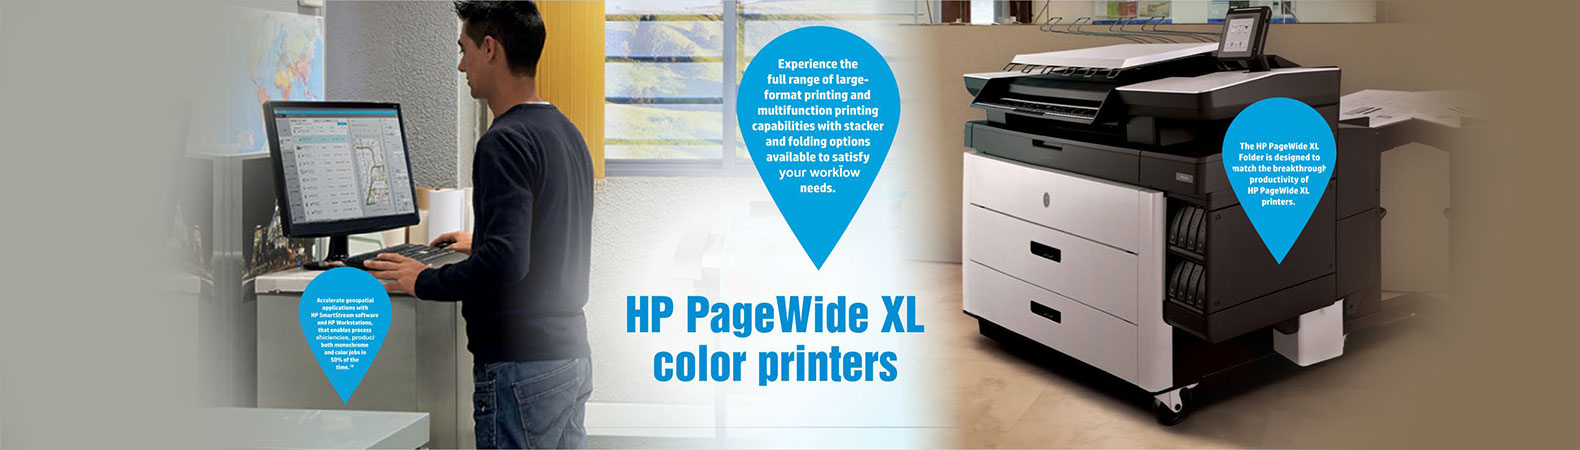 P2V83A 746 300-ml Matte Black Ink Crtg – HP Printer  Plotter Online Shop